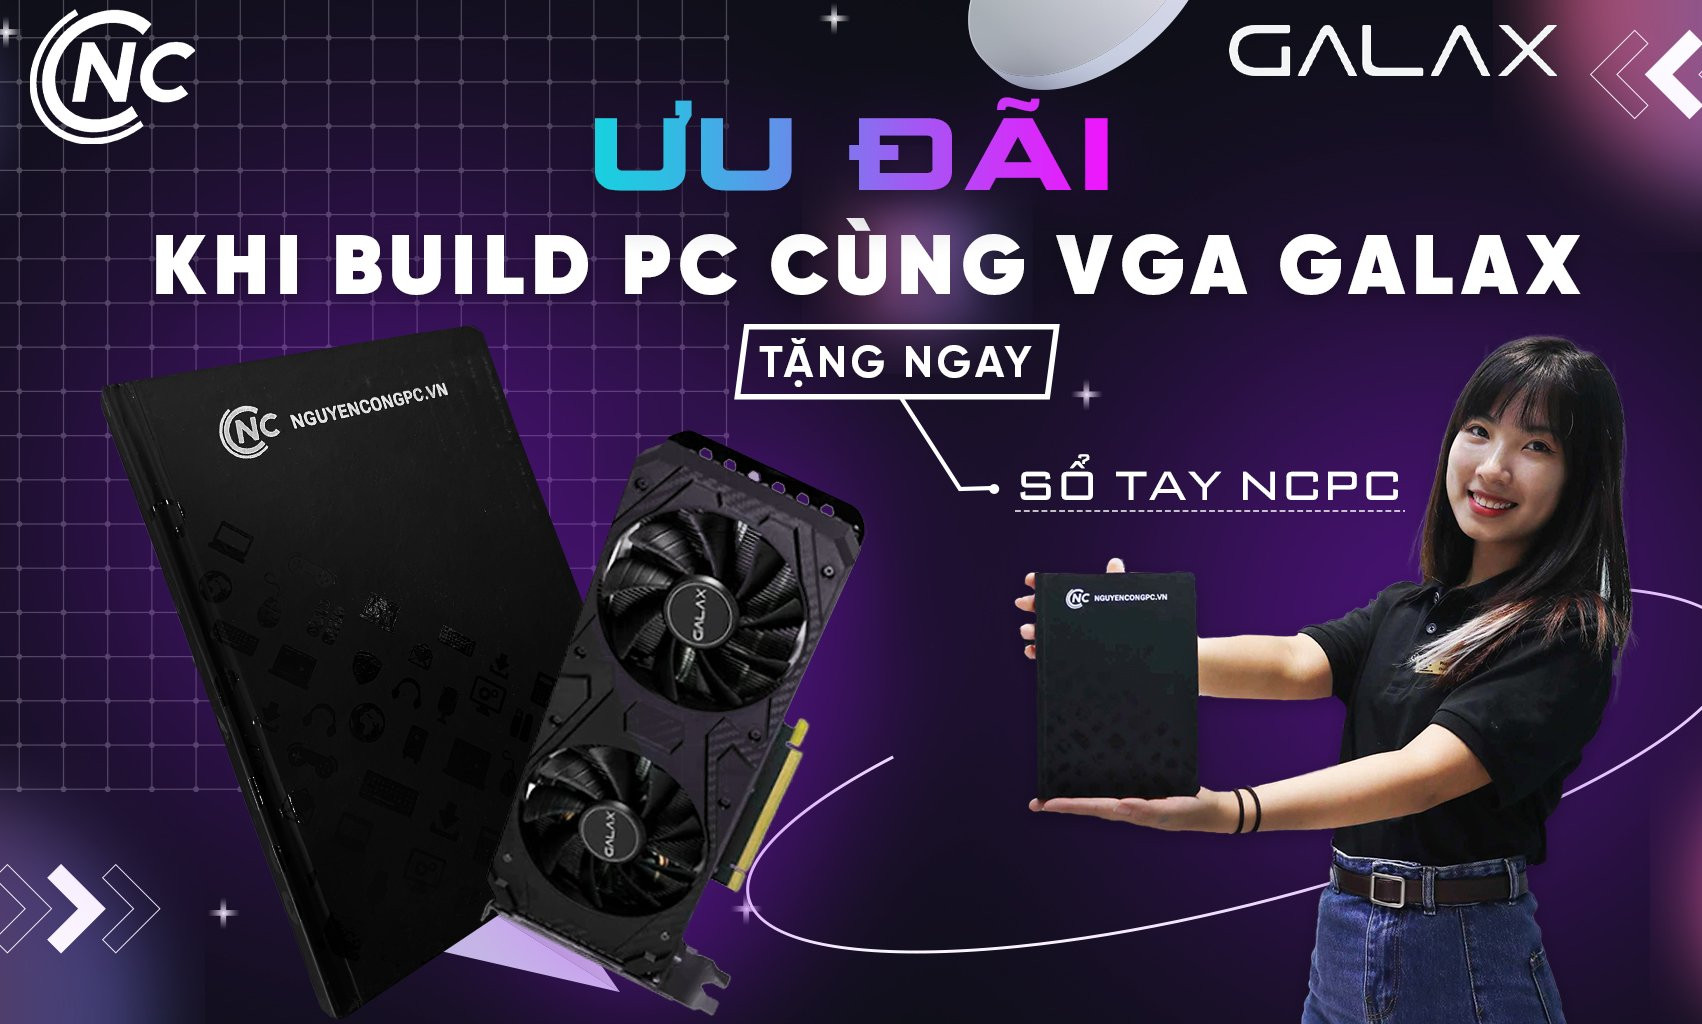 ƯU ĐÃI KHI BUILD PC CÙNG VGA GALAX TẠI NGUYỄN CÔNG PC 